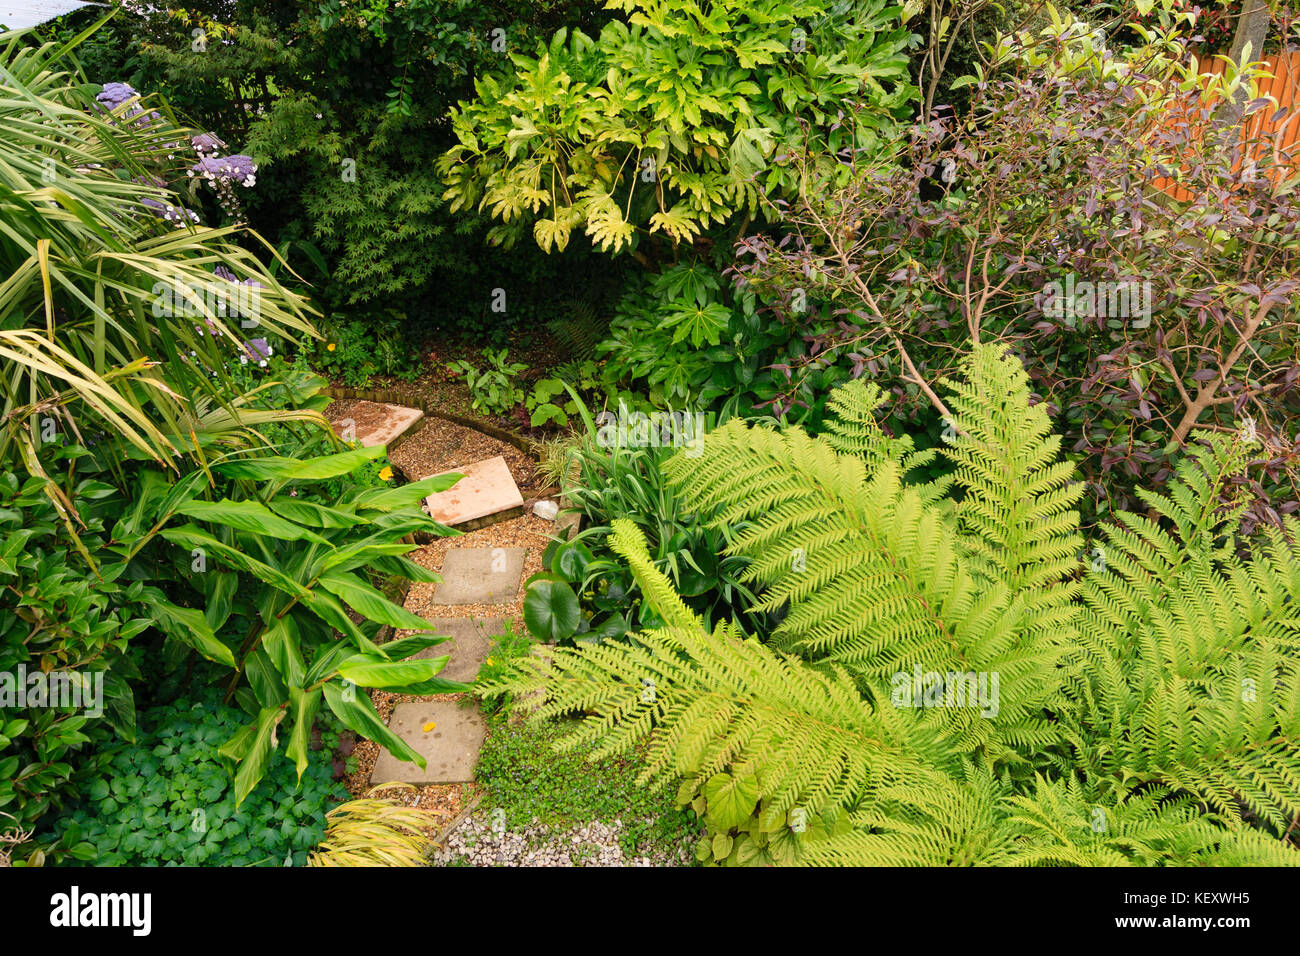 Vue aérienne de frais généraux d'un petit jardin exotique de Plymouth, Devon, UK, avec tree fern,Fatsia, Hedychium et autres contrastes feuillage Banque D'Images